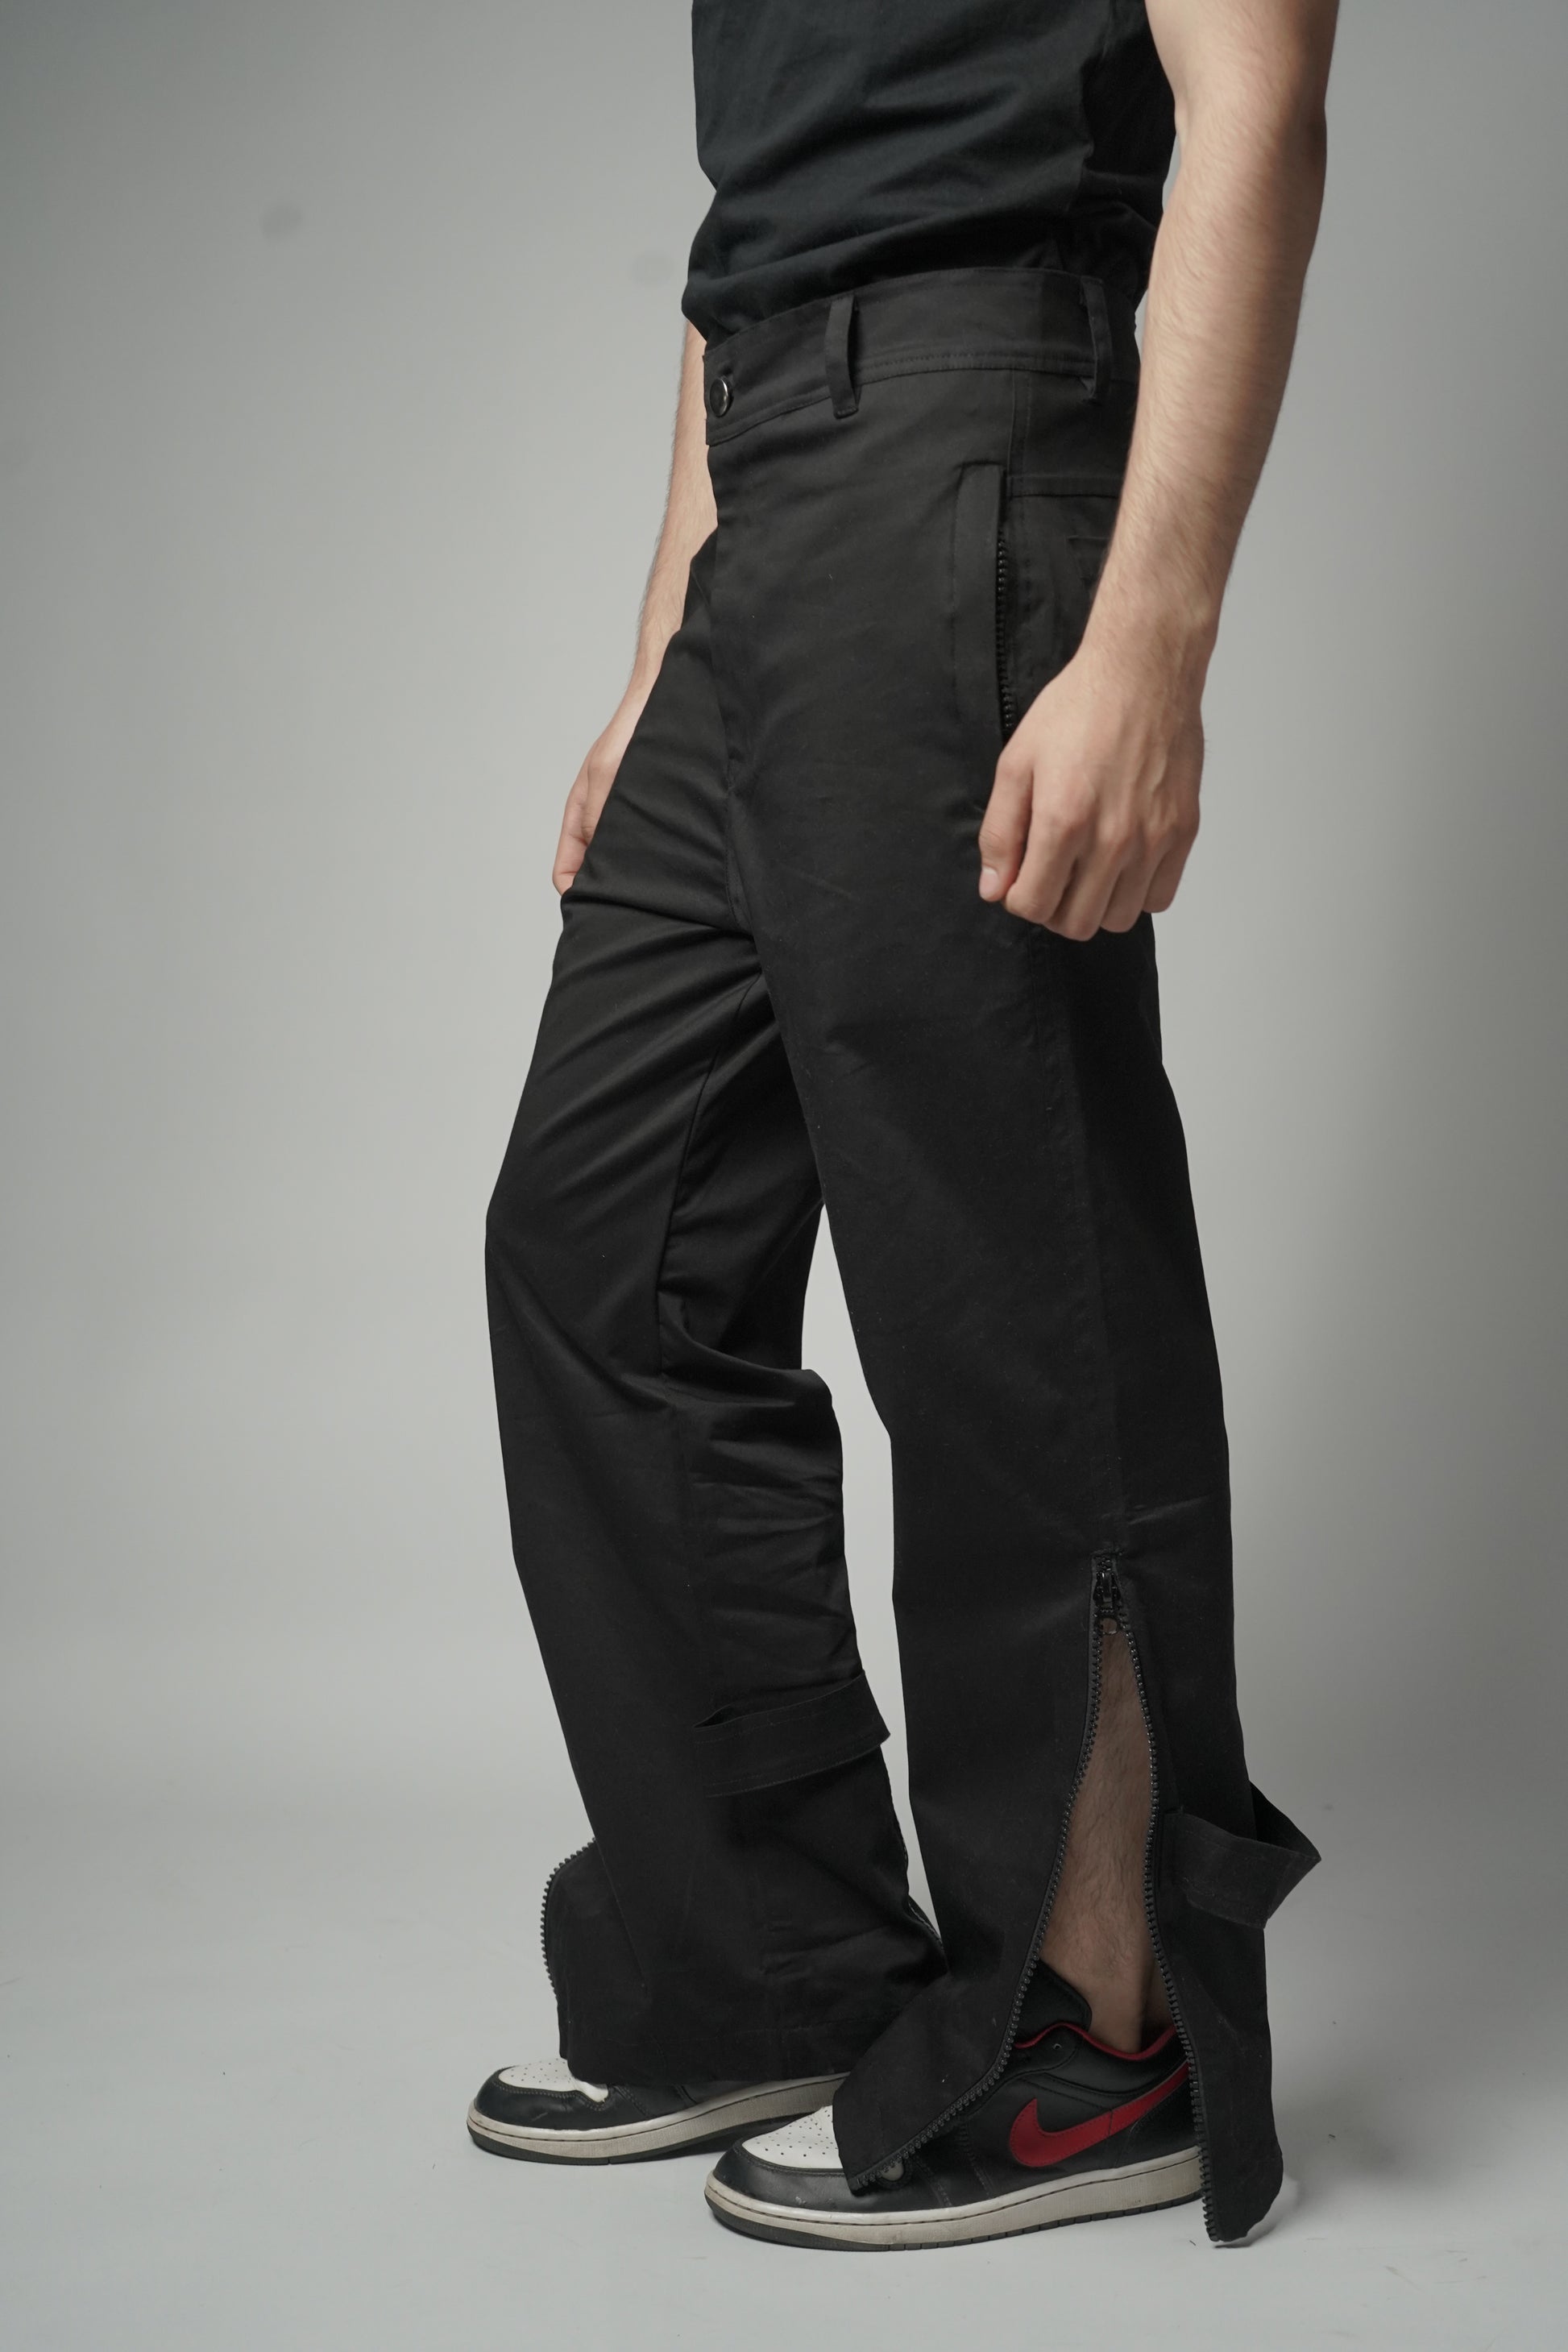 Black Baggy Zipper Pants with Utility zips, leg-revealing zips, and back-flaring zips